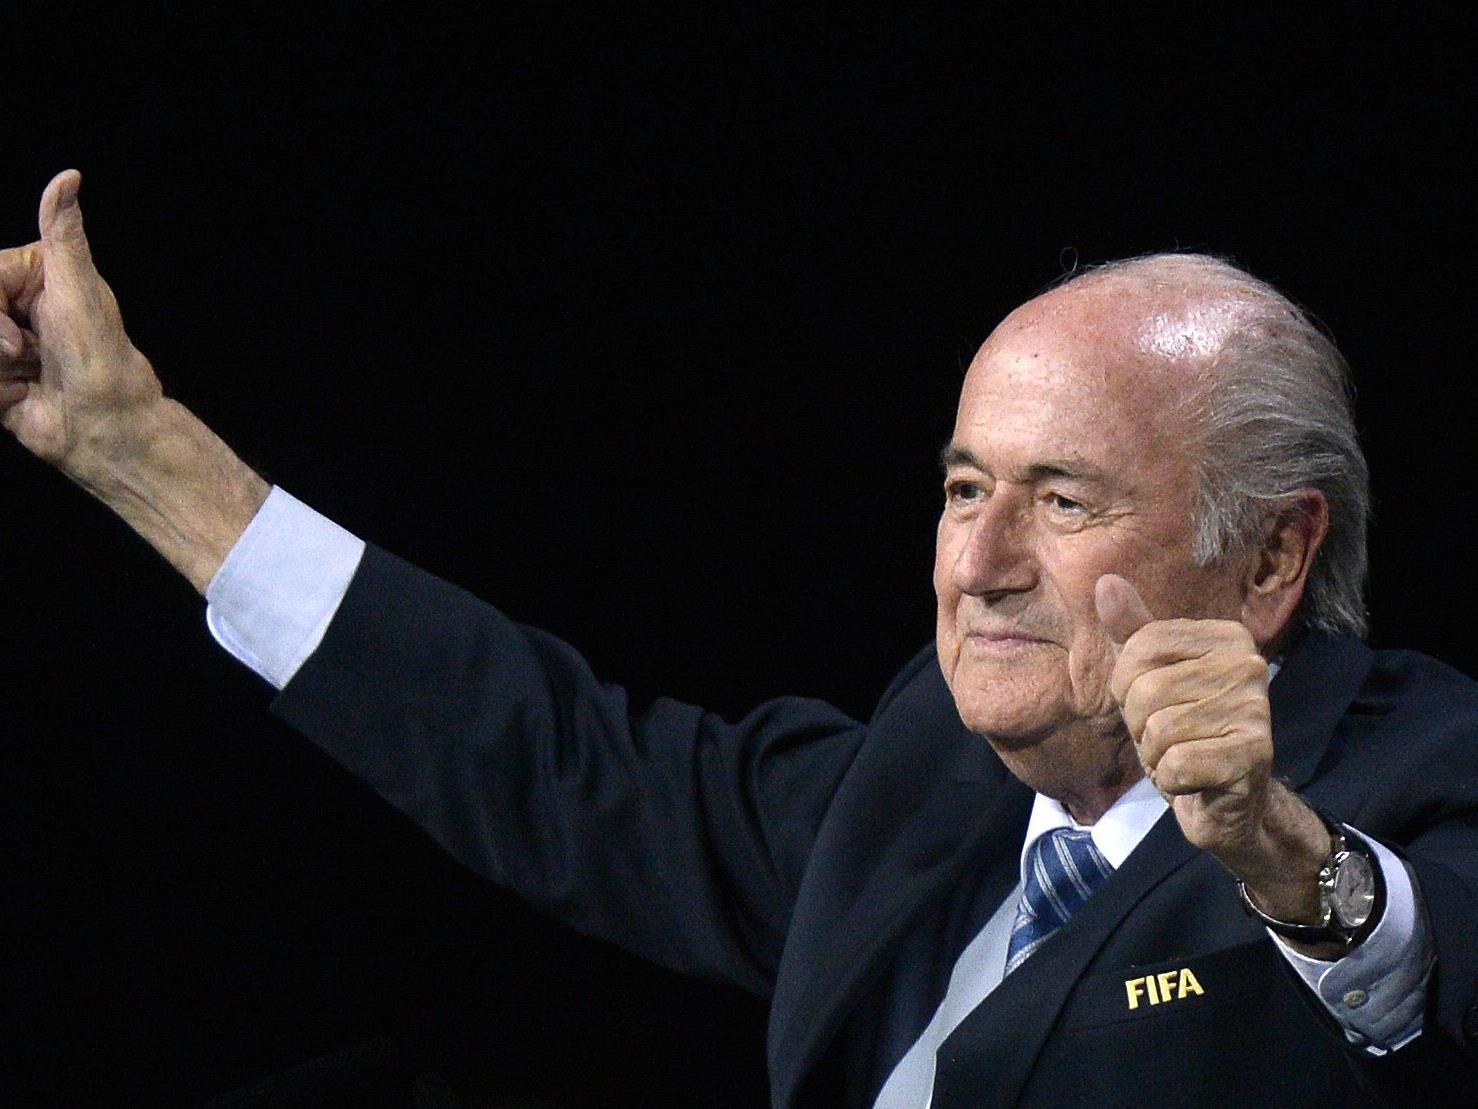 Trotz des größten Skandals der FIFA-Geschichte geht Joseph Blatter in seine fünfte Amtszeit als Präsident der FIFA.